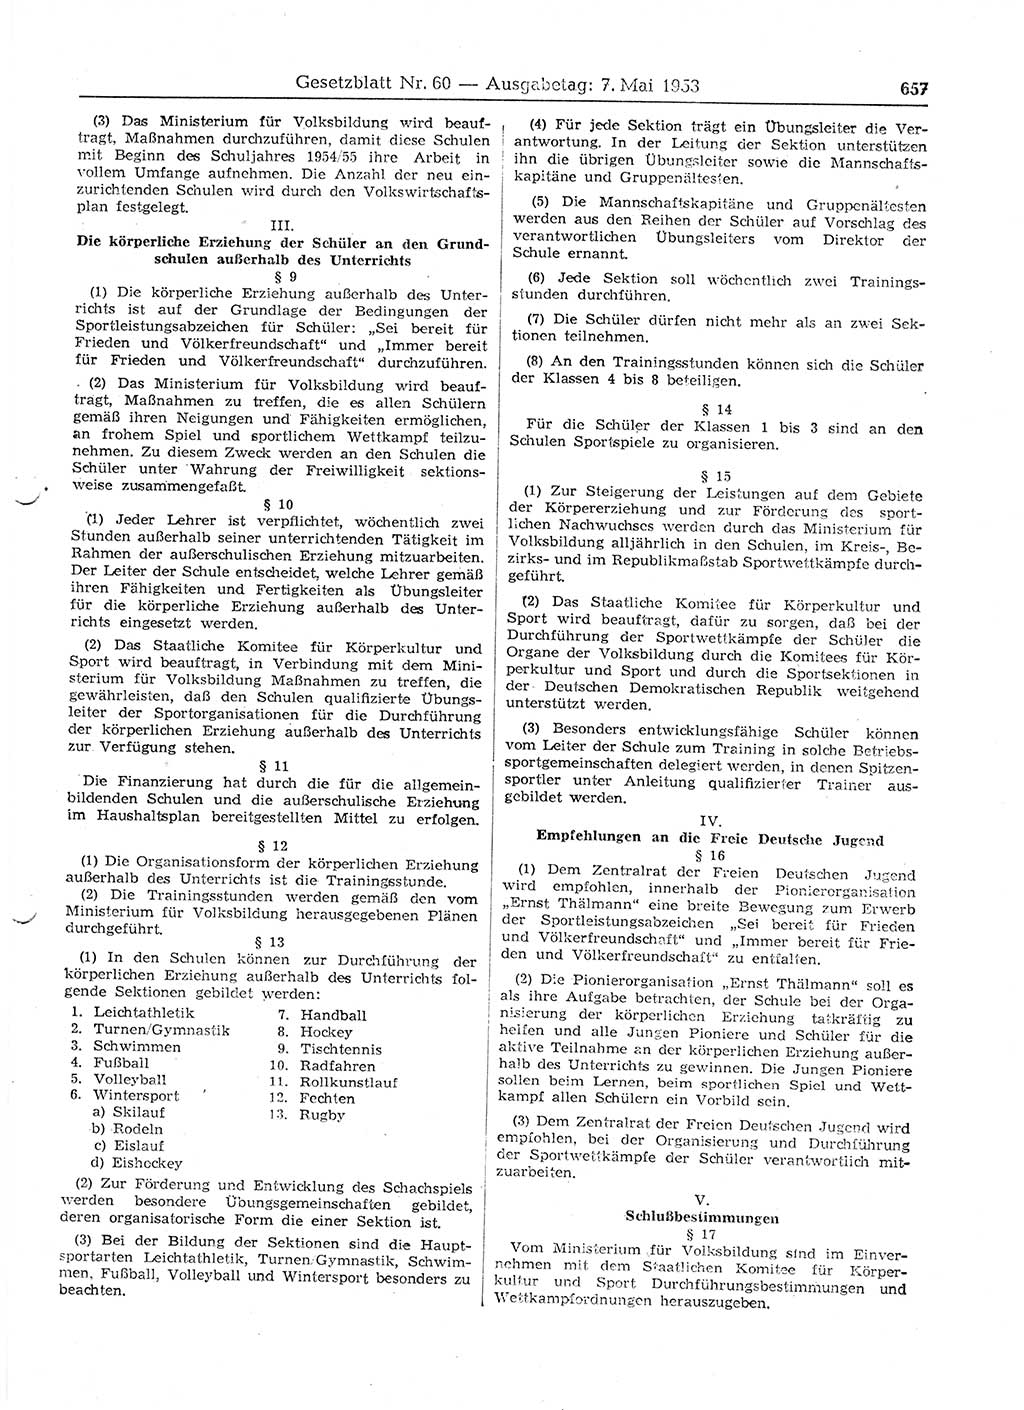 Gesetzblatt (GBl.) der Deutschen Demokratischen Republik (DDR) 1953, Seite 657 (GBl. DDR 1953, S. 657)